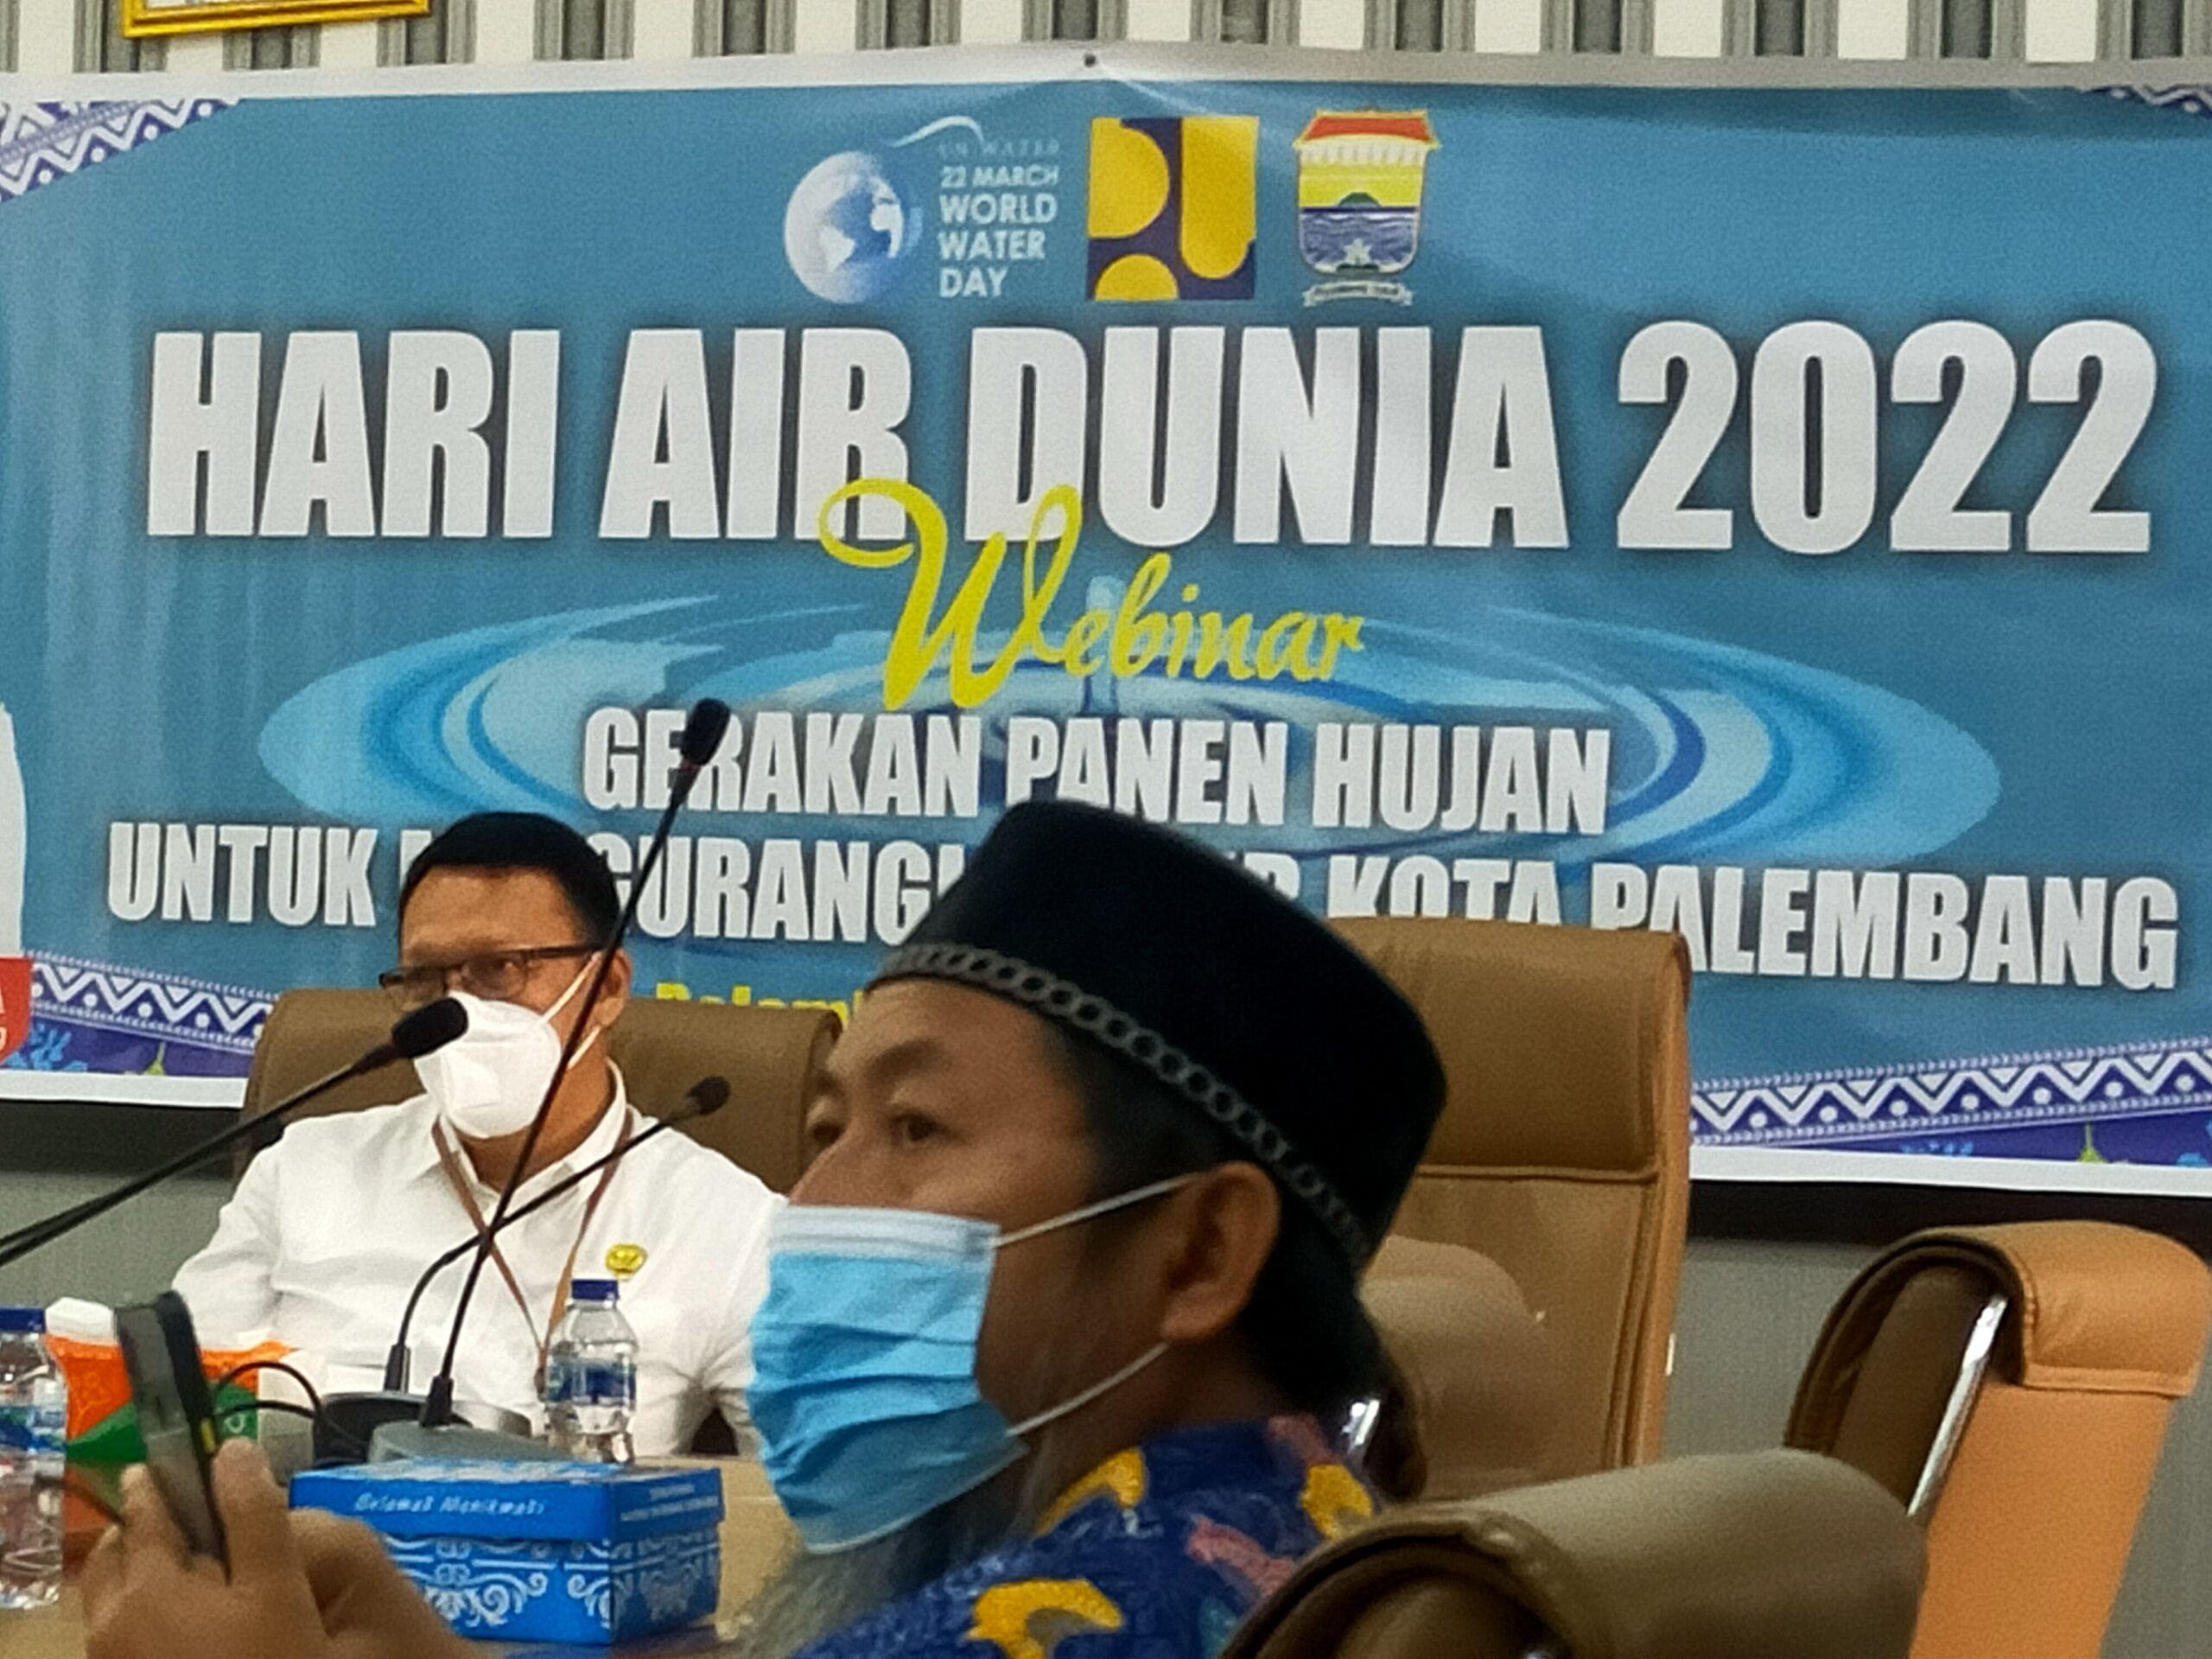 Peringati Hari Air Dunia 2022 Dinas PUPR Kota Palembang adakan Webinar Bertema Gerakan Panen Hujan